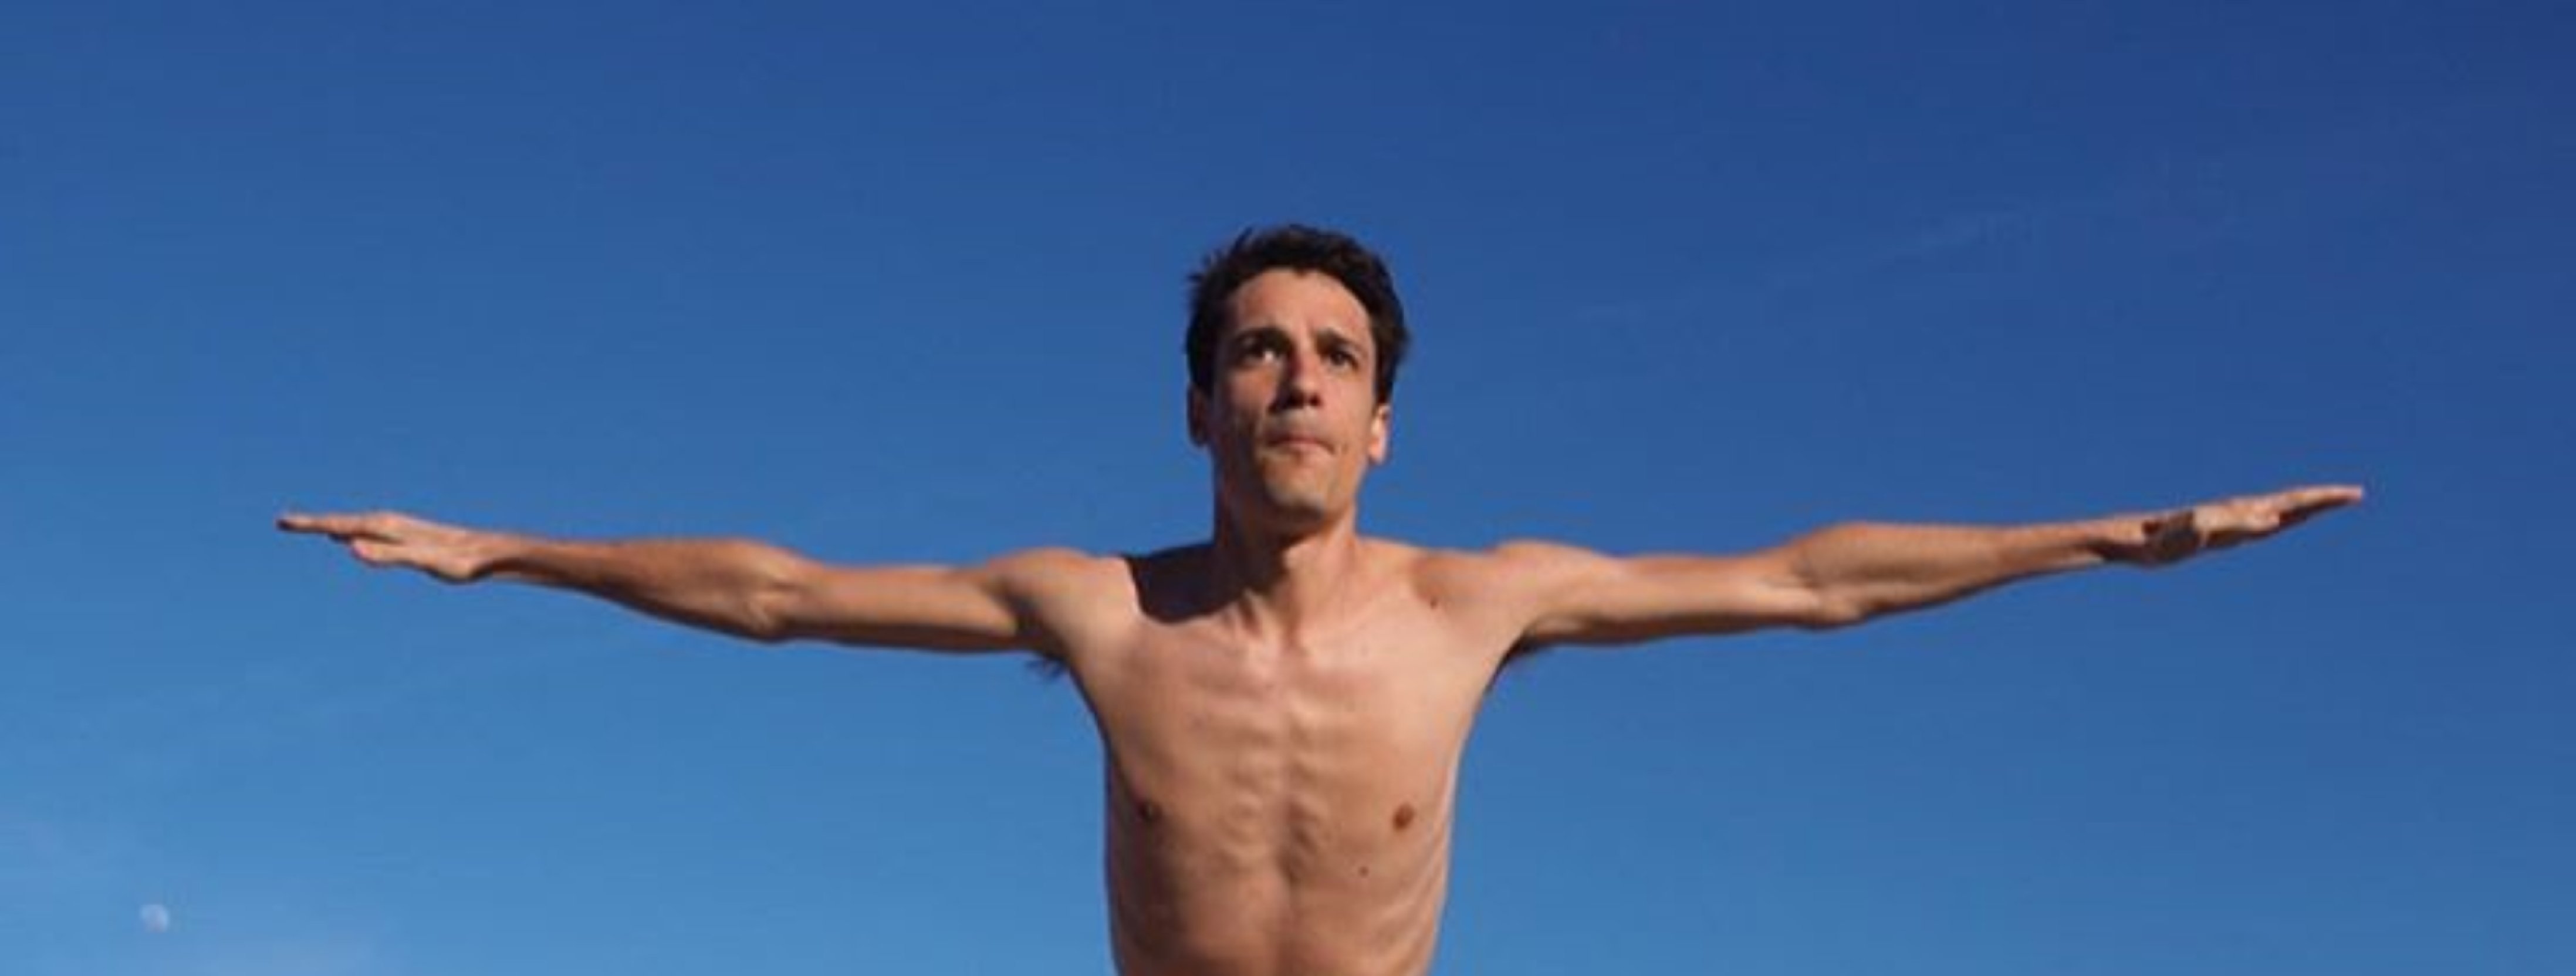 Fotos de Marcos Franz, estrella de 'Merlí', desnudo en la playa (otra vez)